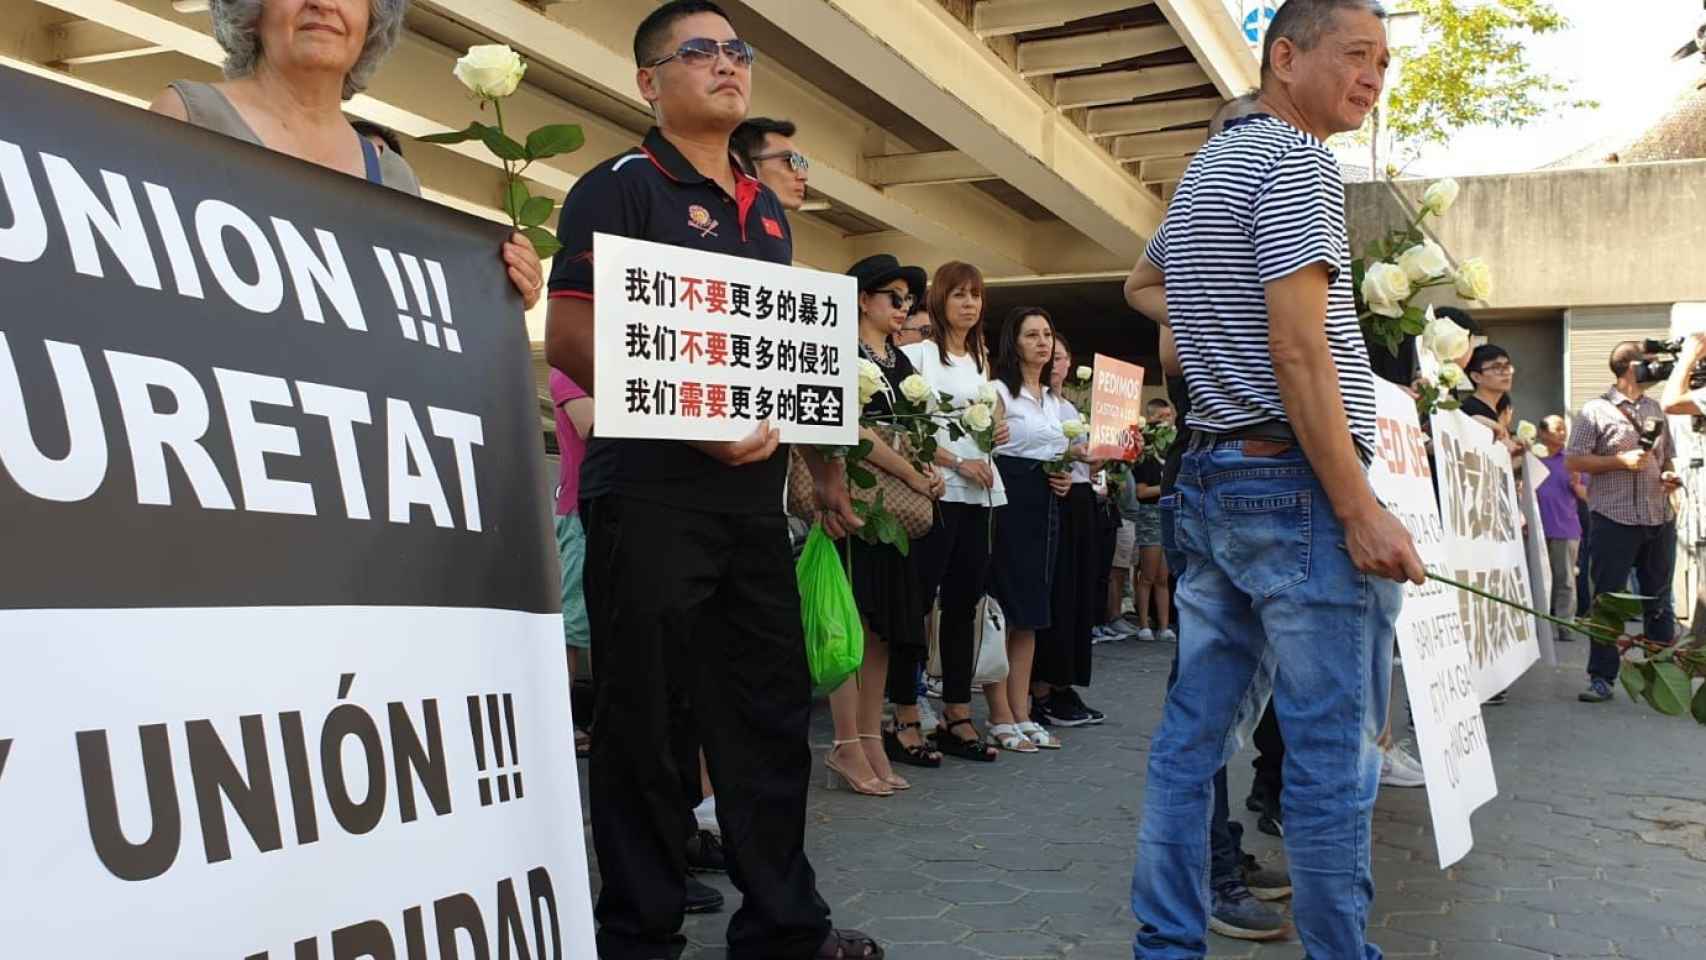 Un miembro de la comunidad china barcelonesa protesta por la muerte del joven en el Port Olímpic / TWITTER